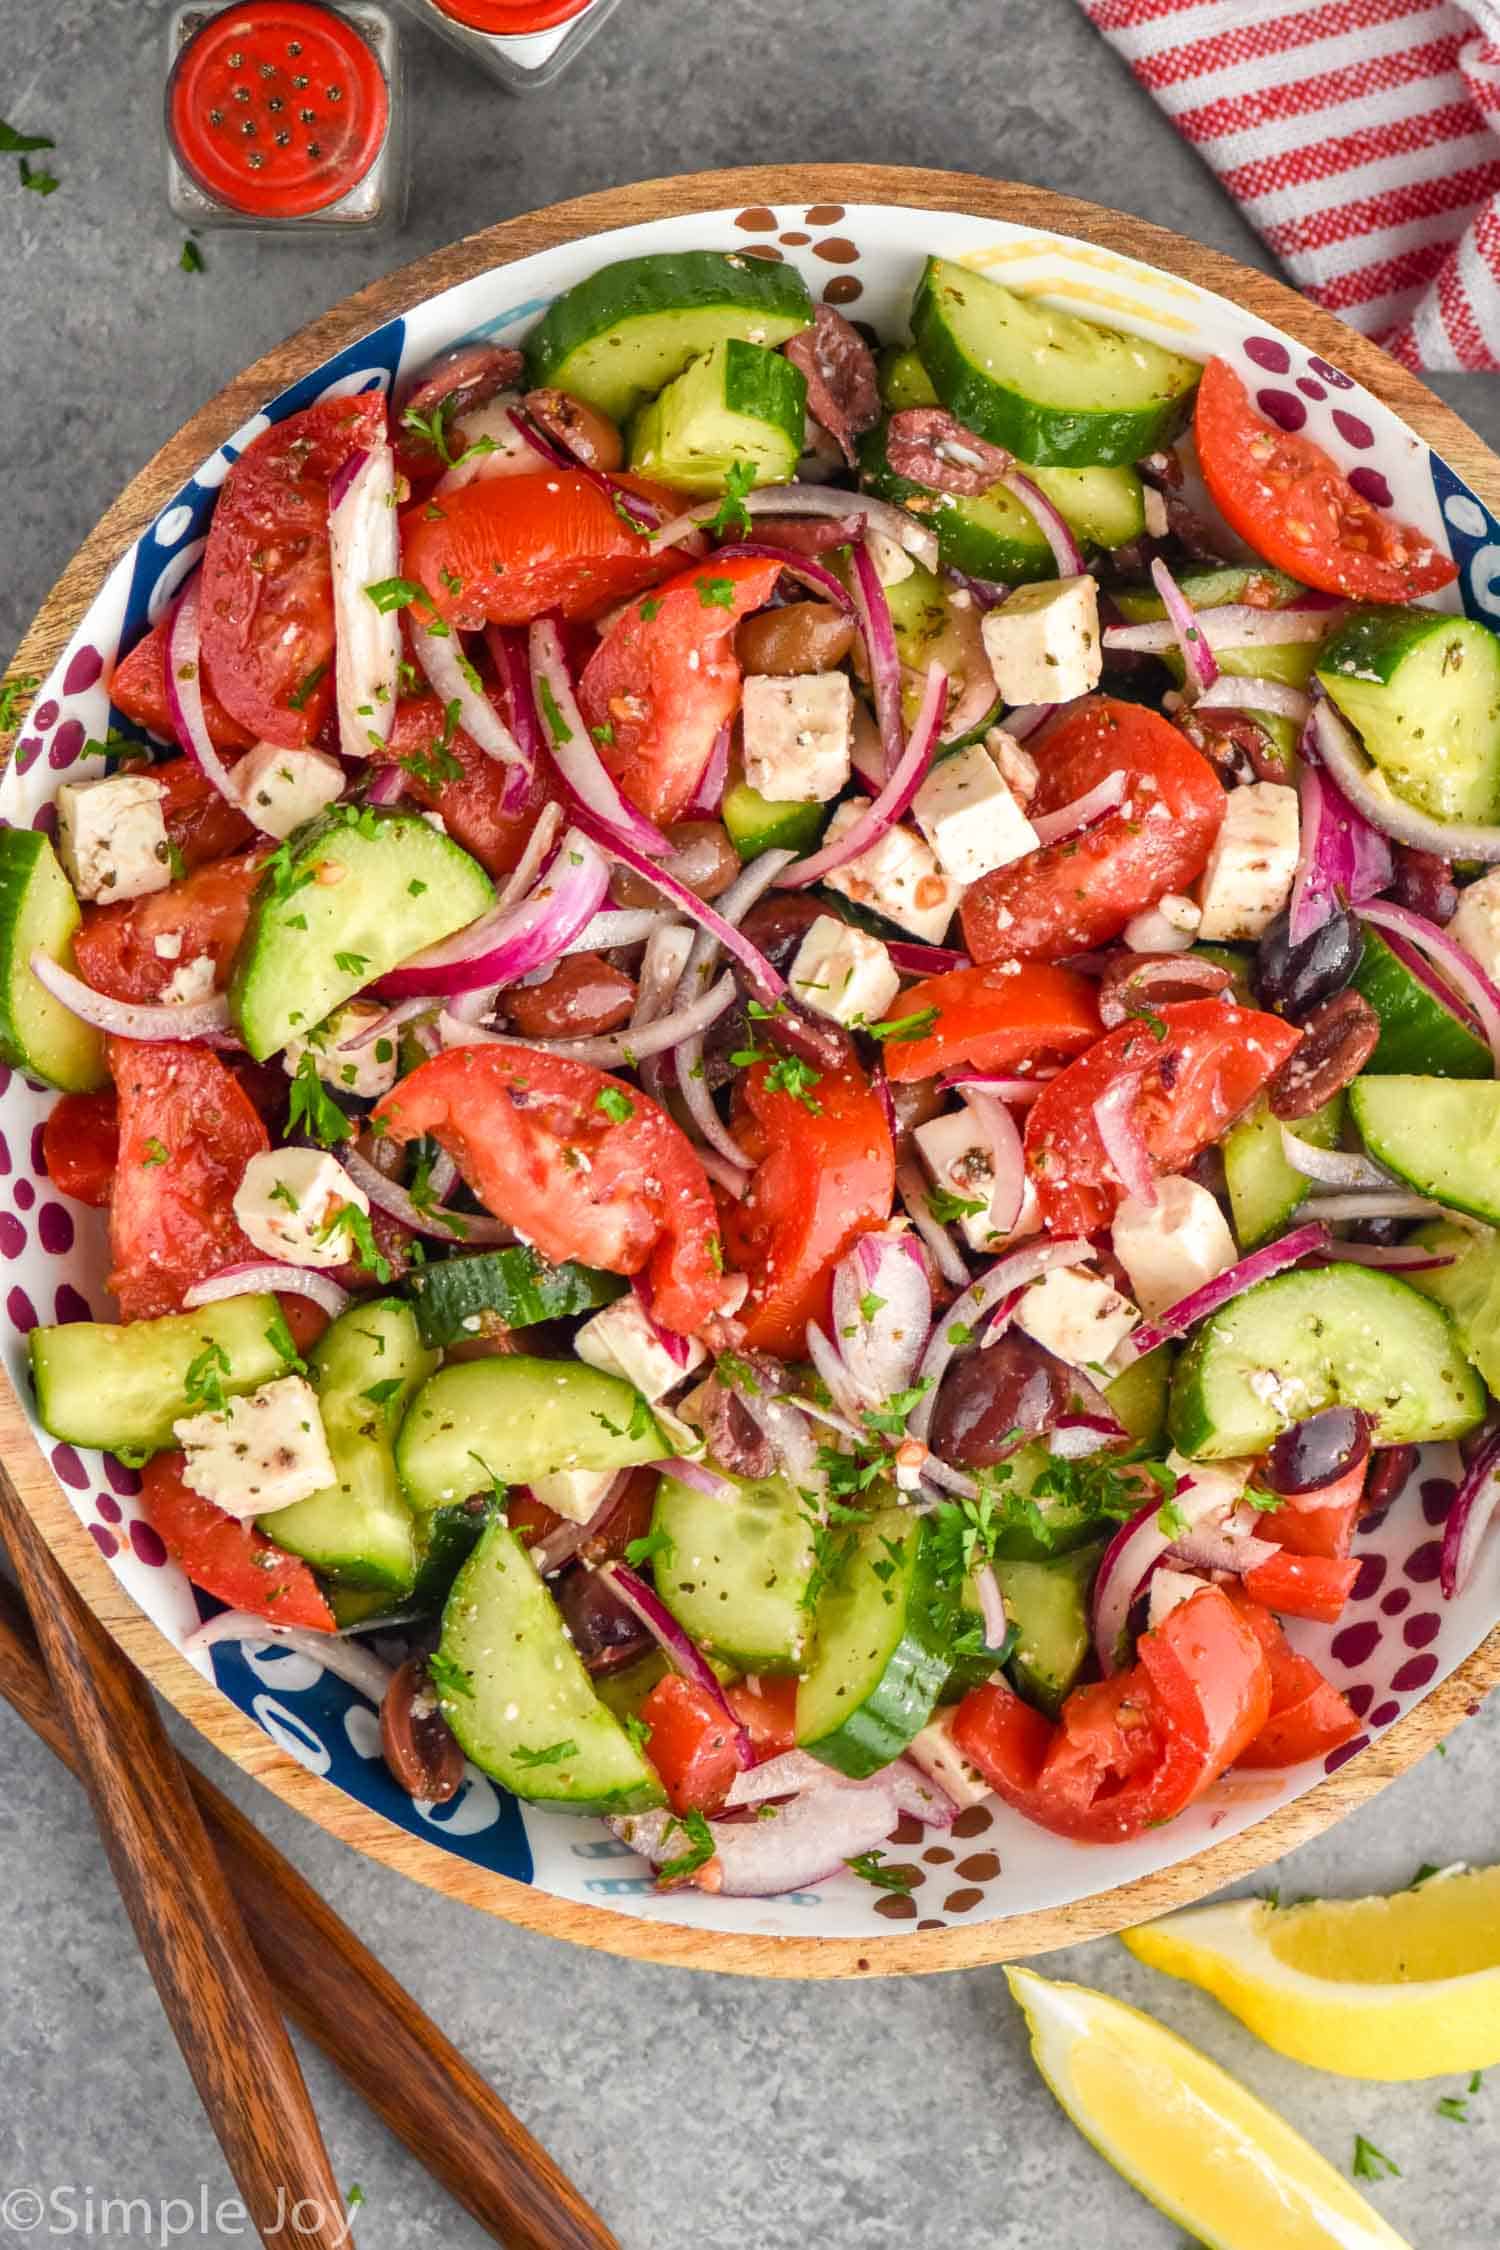 Mediterranean diet salads